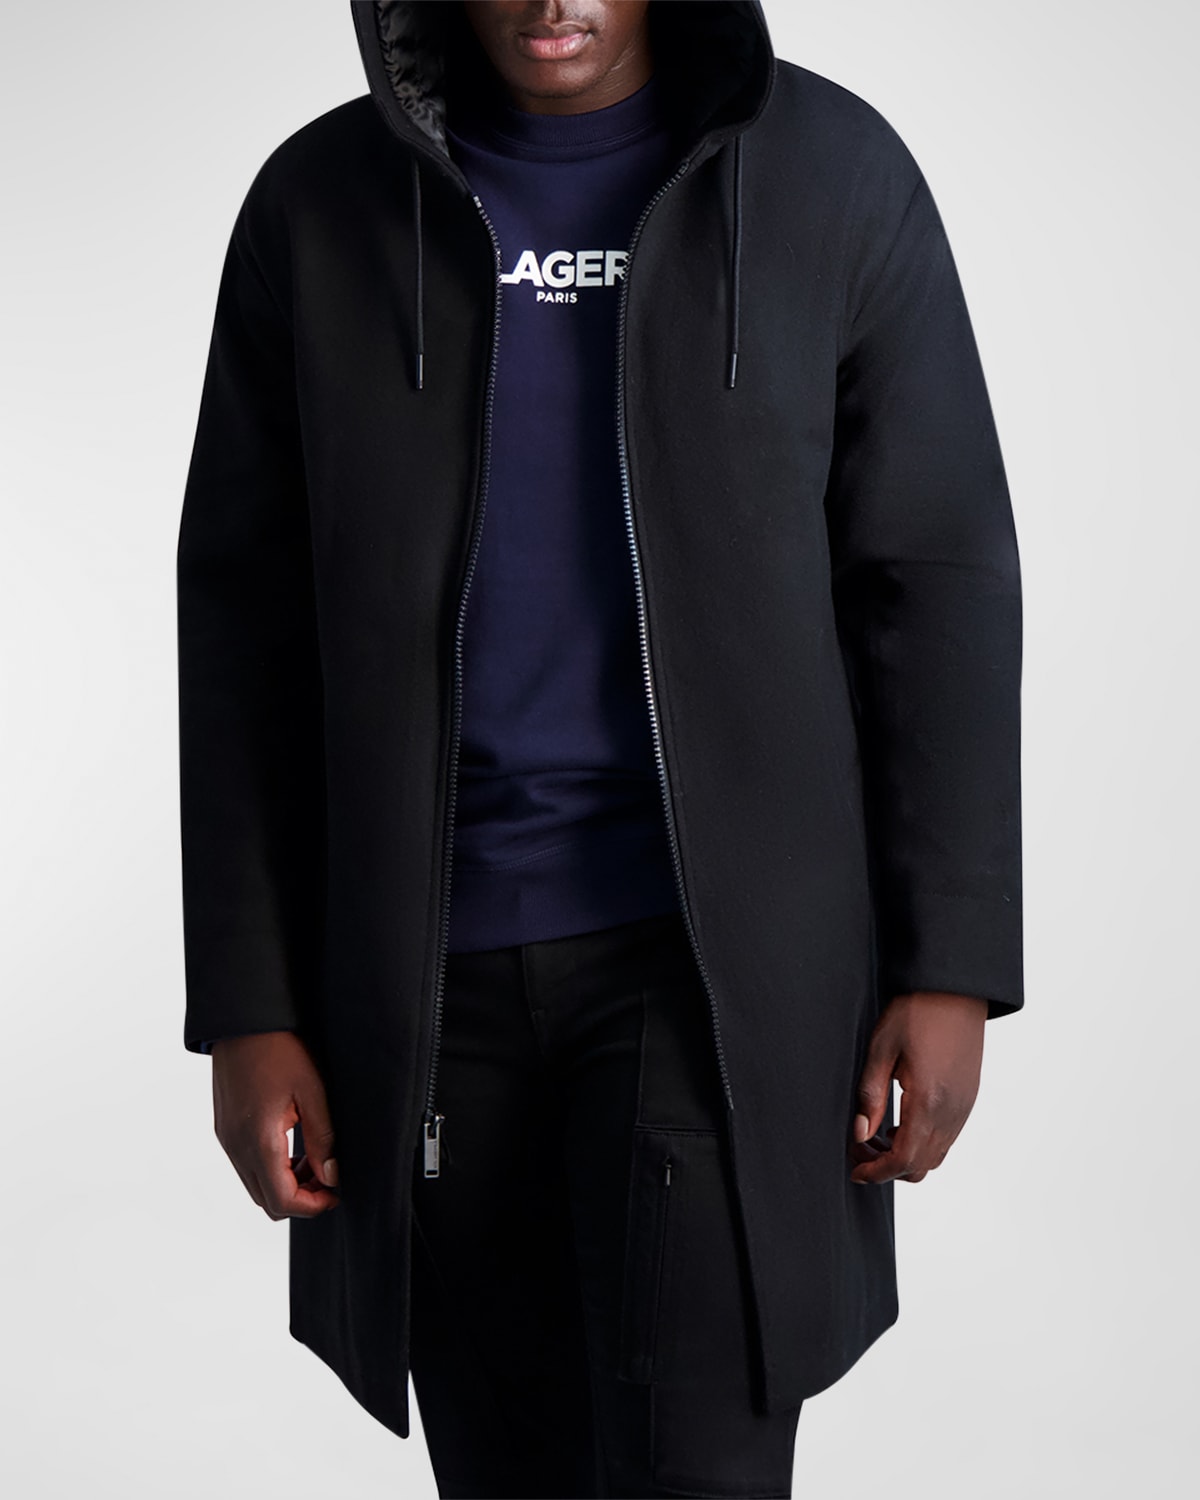 Karl Lagerfeld Men's Wool-blend Parka W/ Handwarmer Pockets In Black